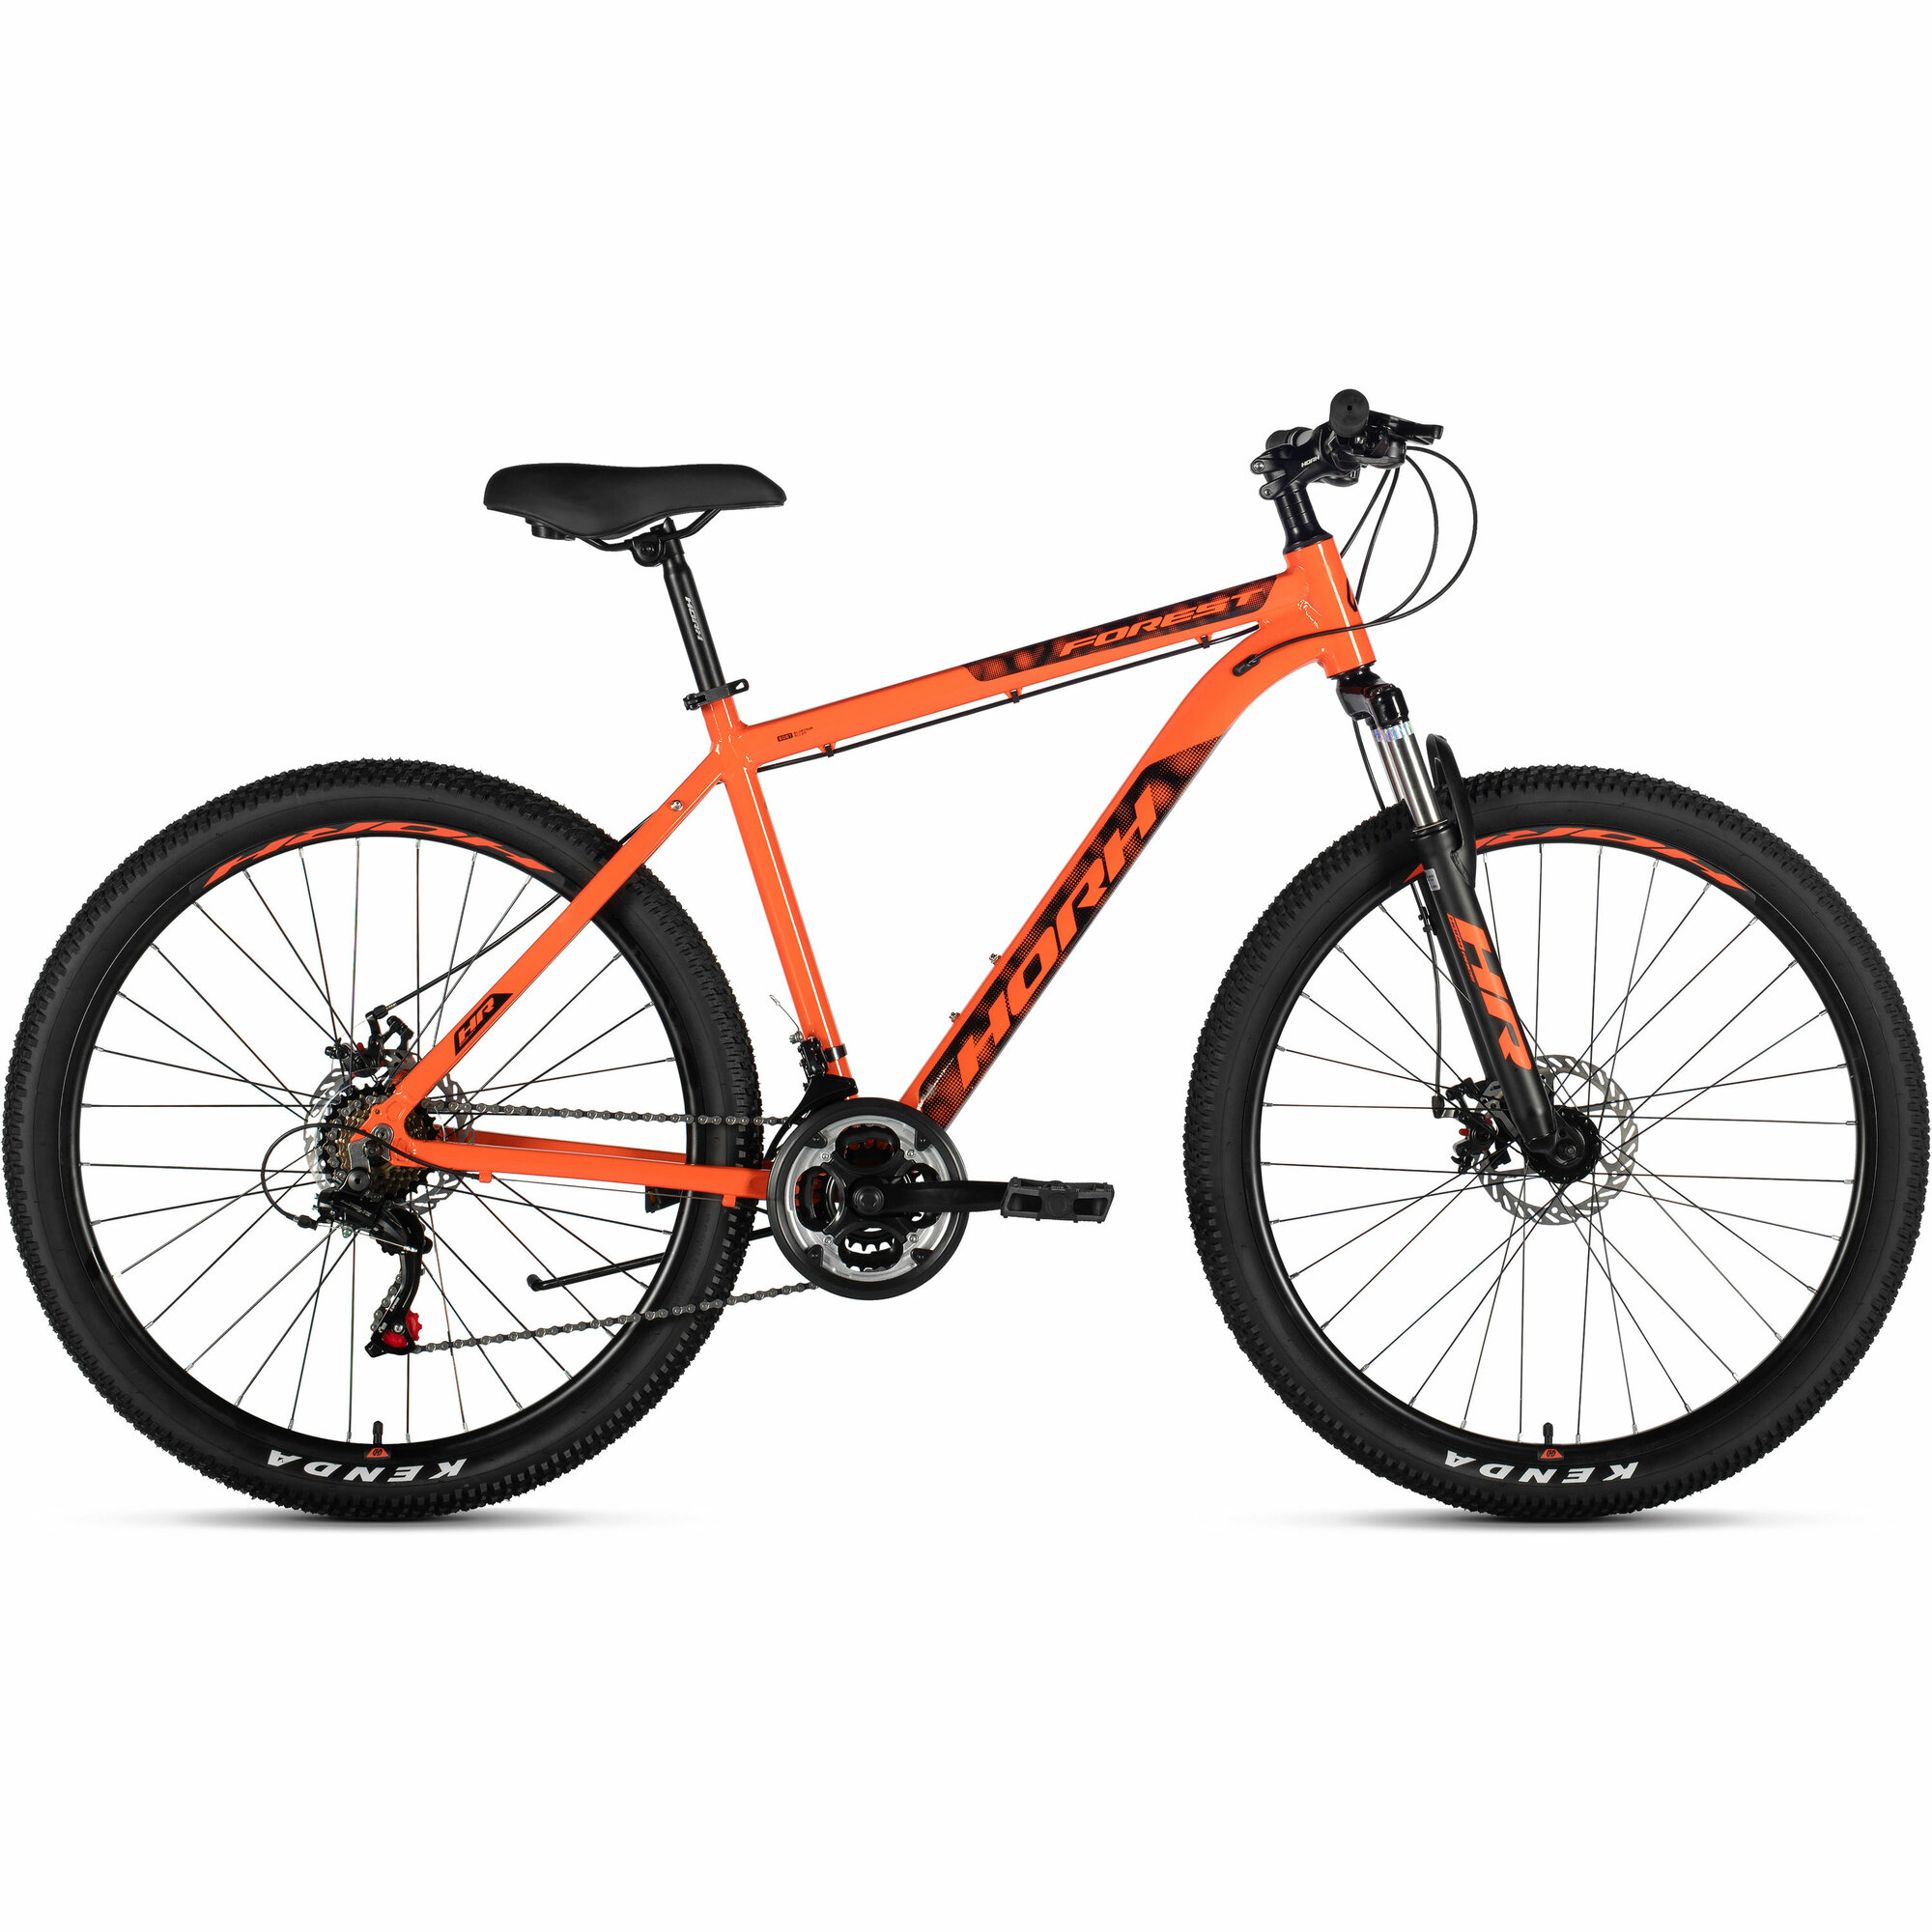 Велосипед горный HORH FOREST FMD 7.0 27.5", рама 13,5 (2024), хардтейл, взрослый, мужской, алюминиевая рама, 21 скорость, дисковые механические тормоза, цвет Orange-Black, оранжевый/черный цвет, размер рамы 19", для роста 180-190 см